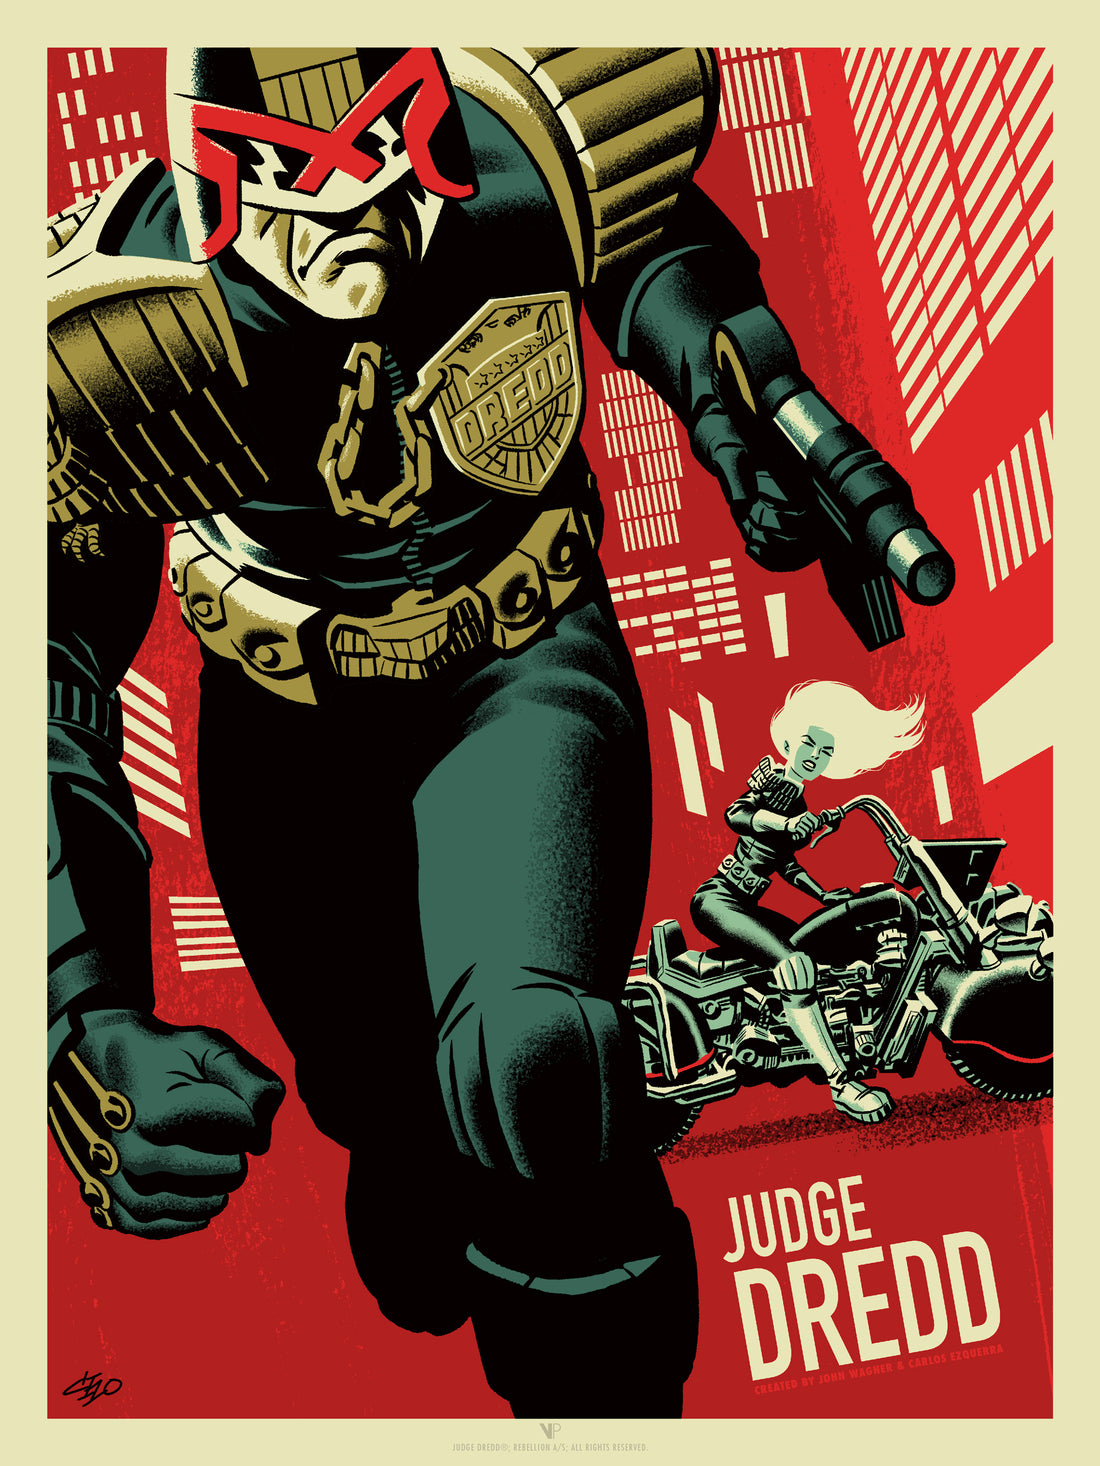 Judge Dredd and Judge Anderson